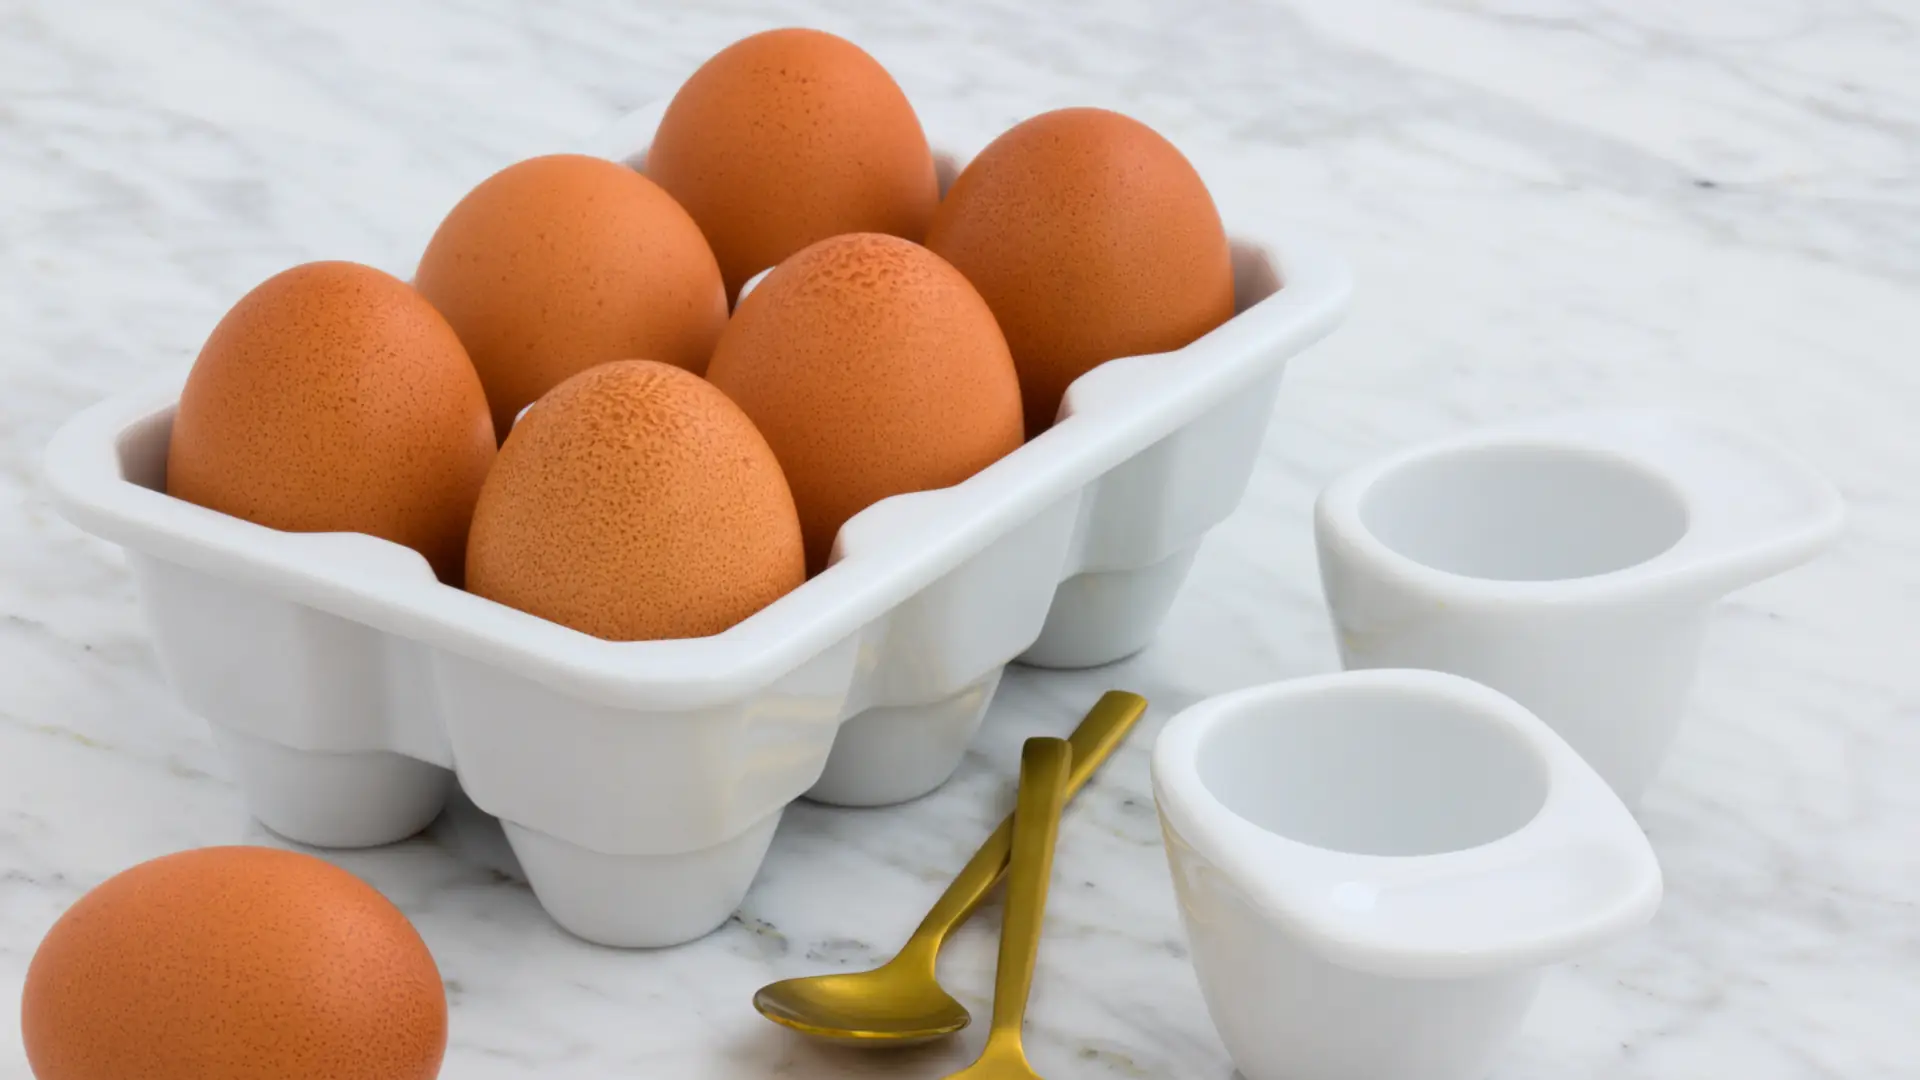 myFoodDoctor: Eier haben eine sehr hohe biologische Wertigkeit. Ihre Proteine sind für den menschlichen Körper sehr gut verwertbar.